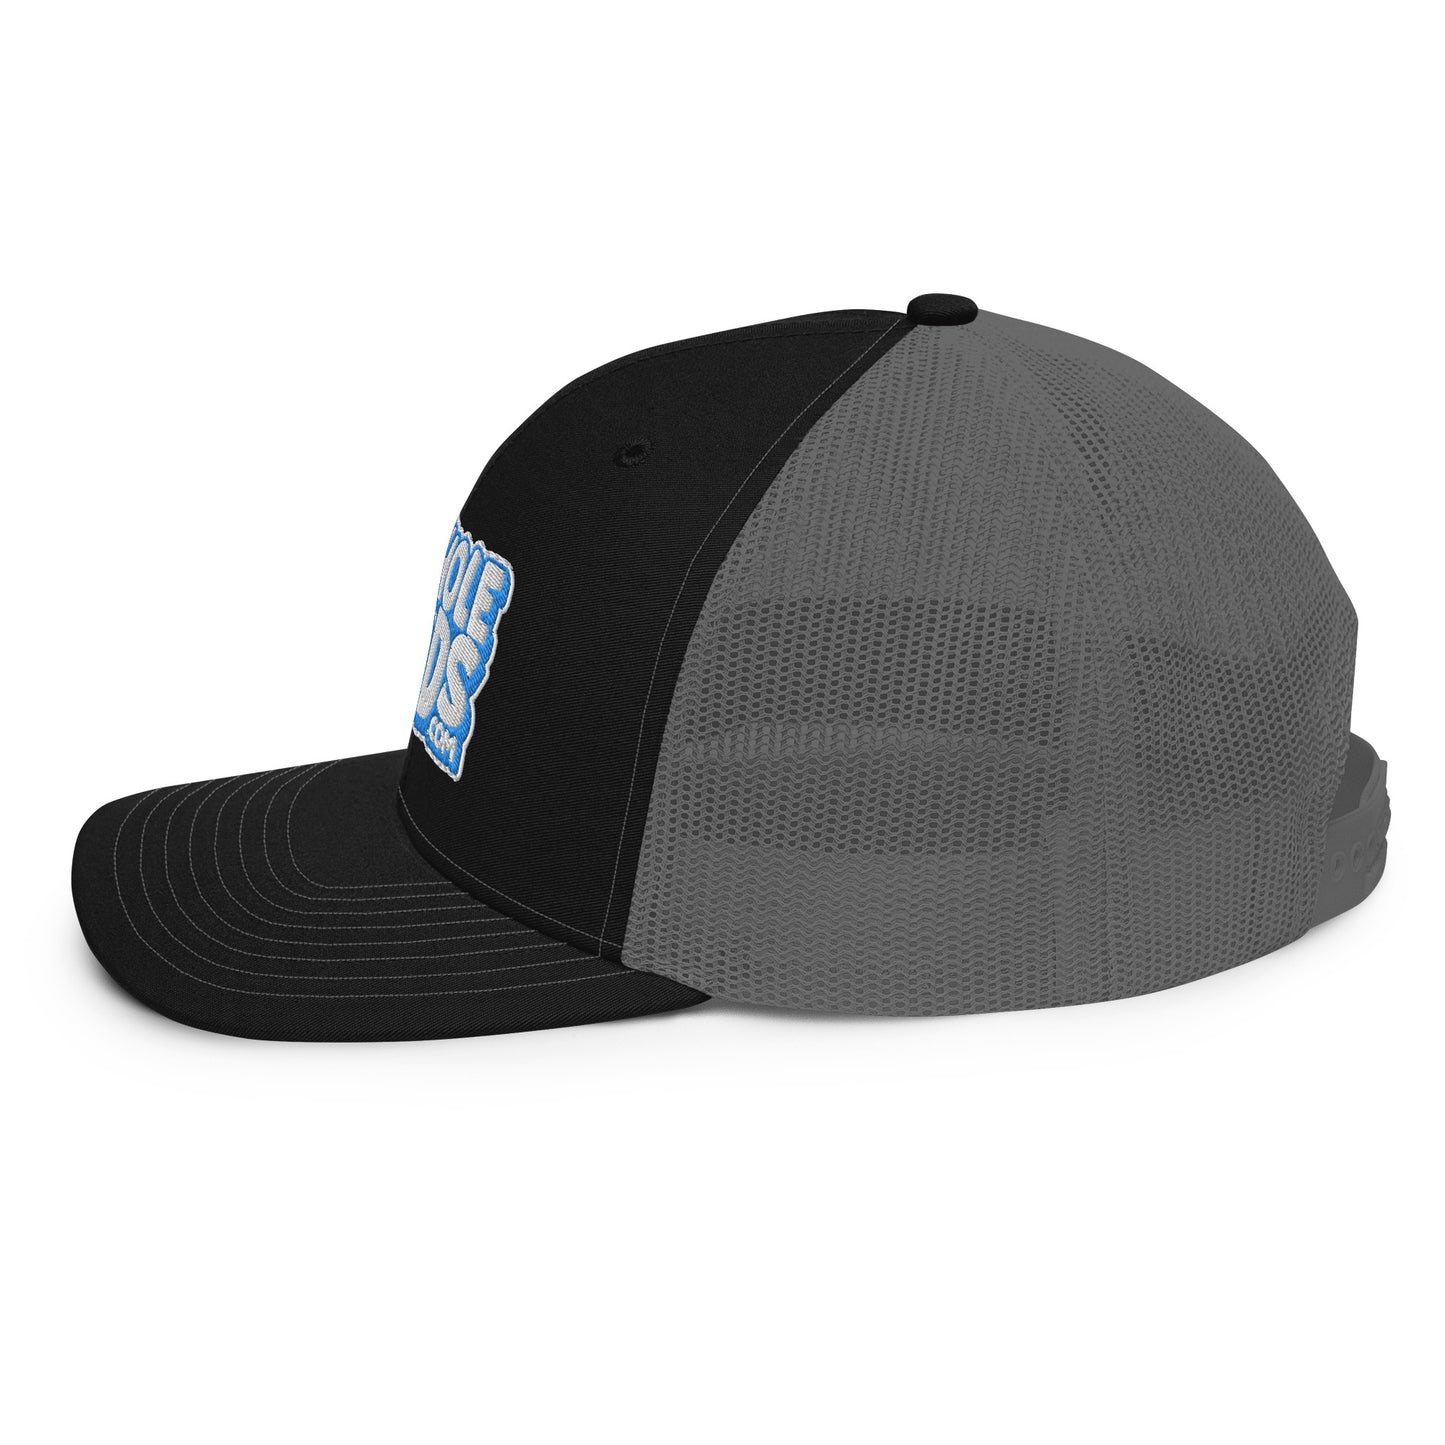 white/light blue nerds logo Richardson 112 snapback Trucker hat